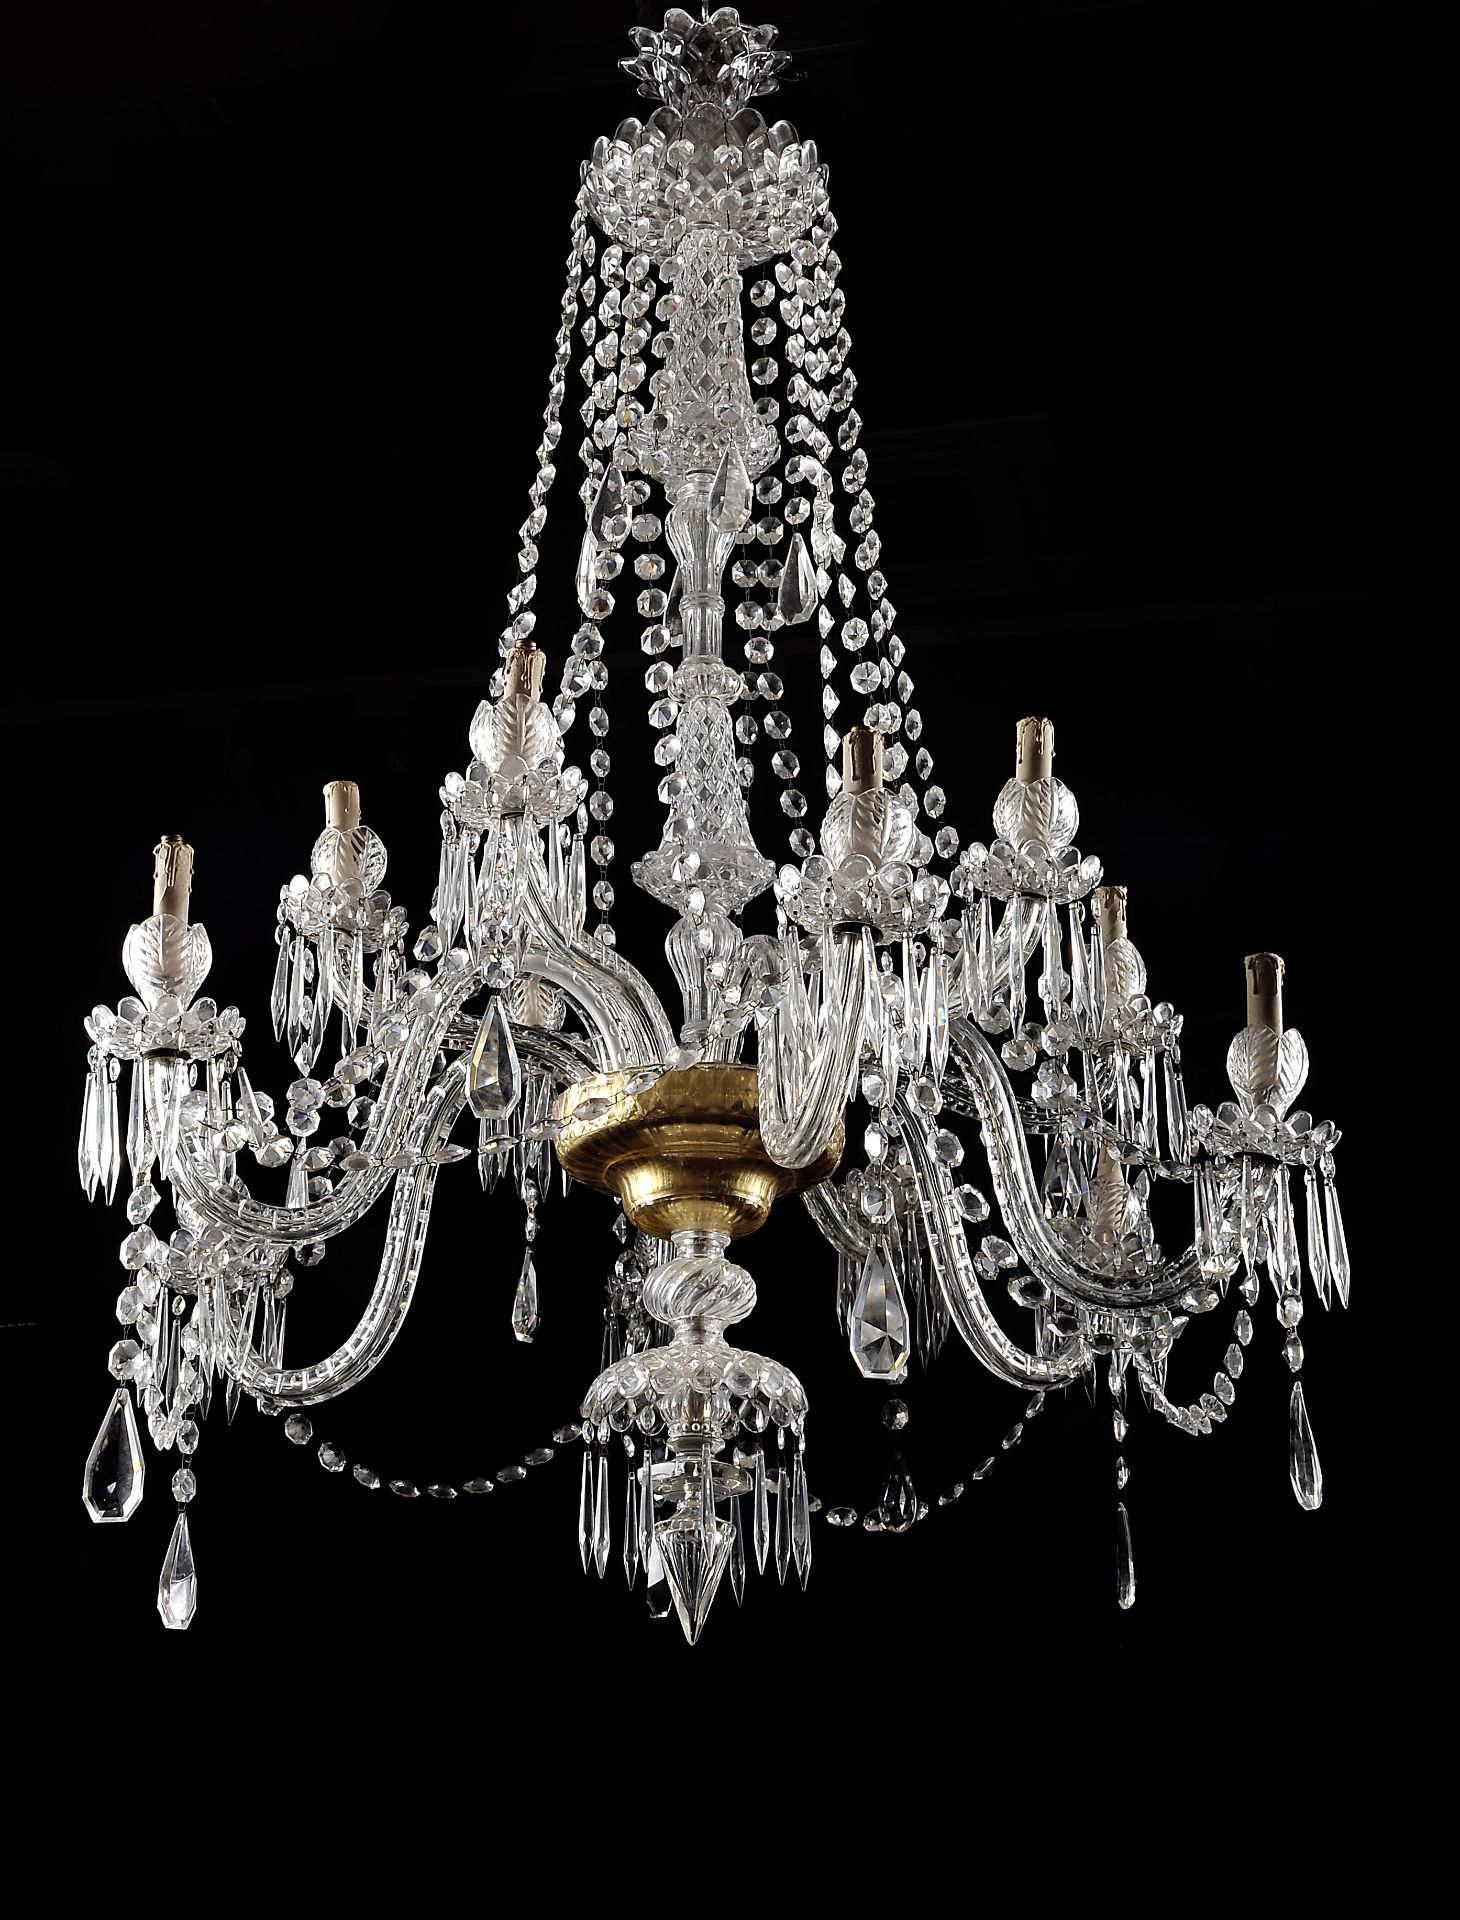 A twelve-light chandelier